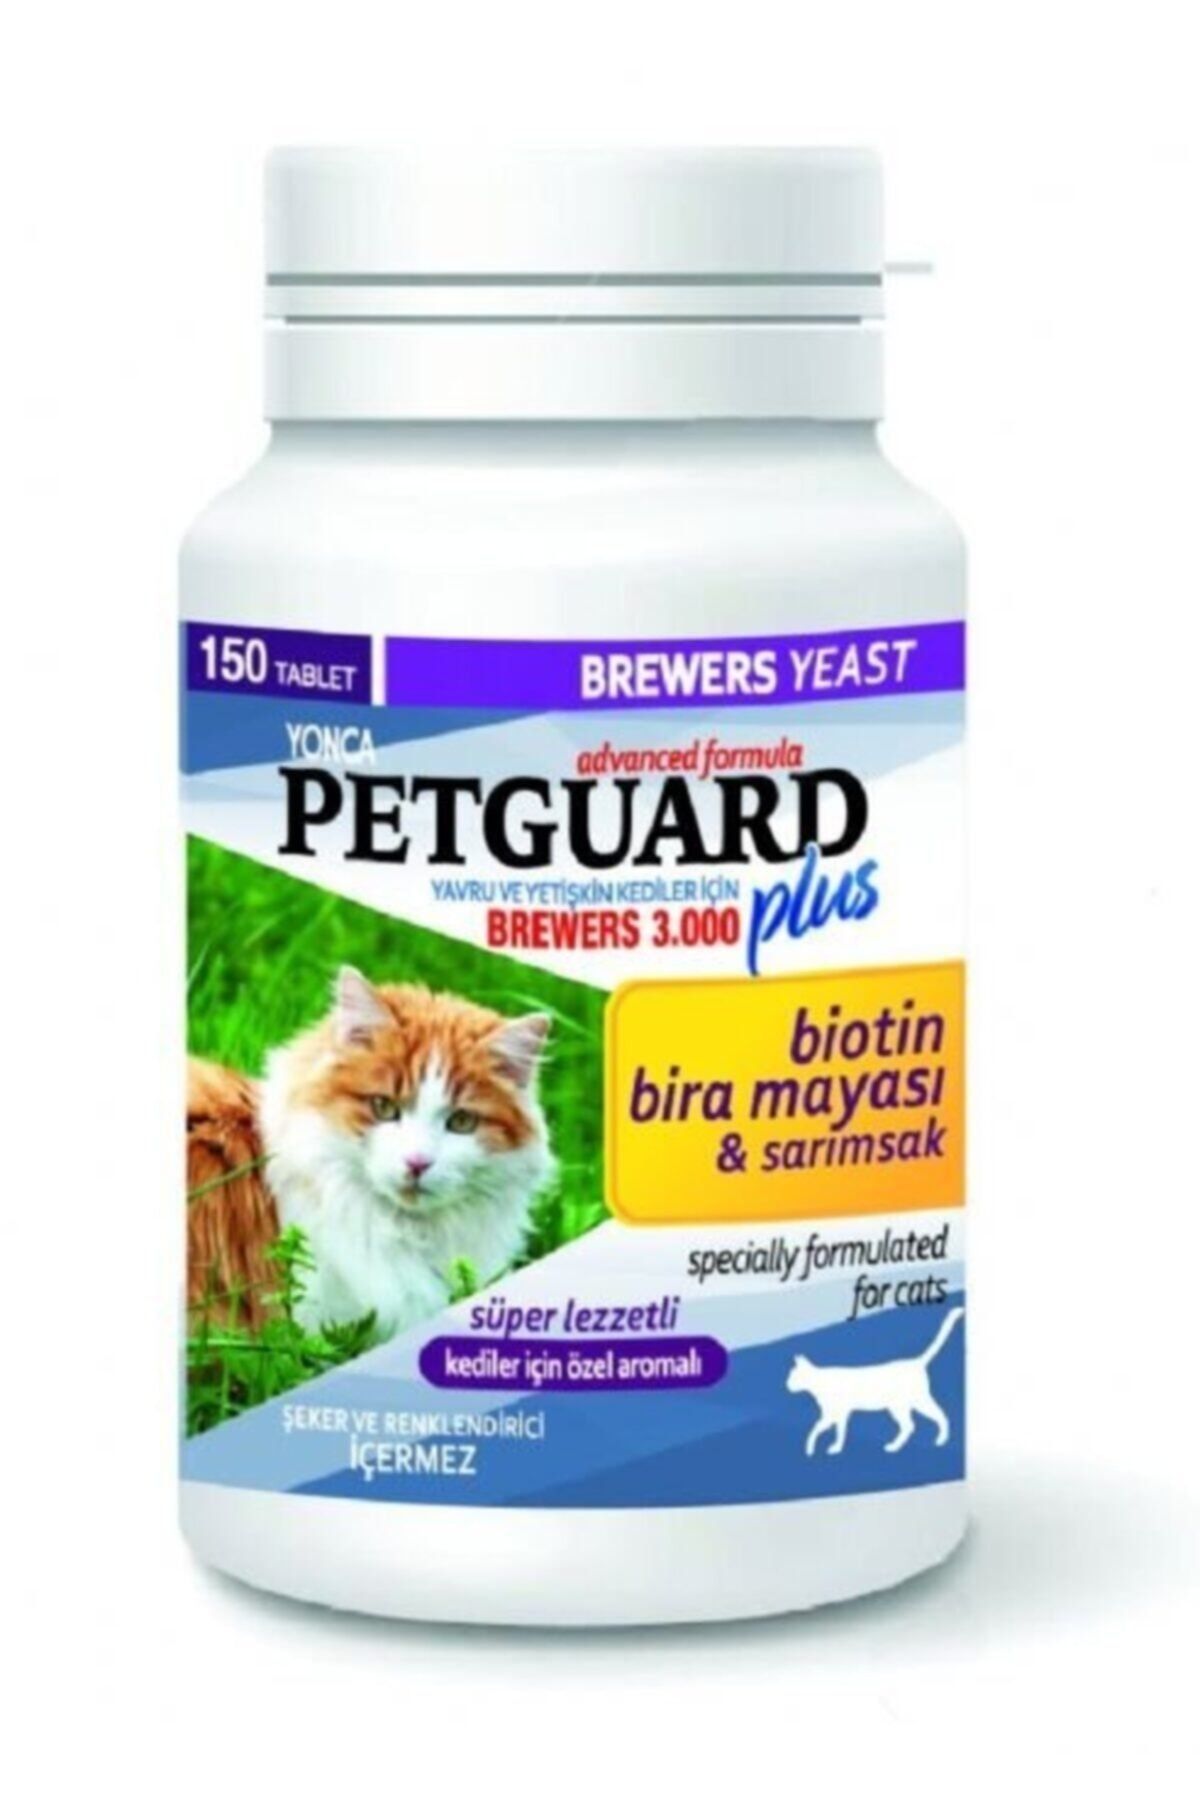 Petgarden Petguard Biotin Bira Mayası Ve Sarımsaklı Tablet 150